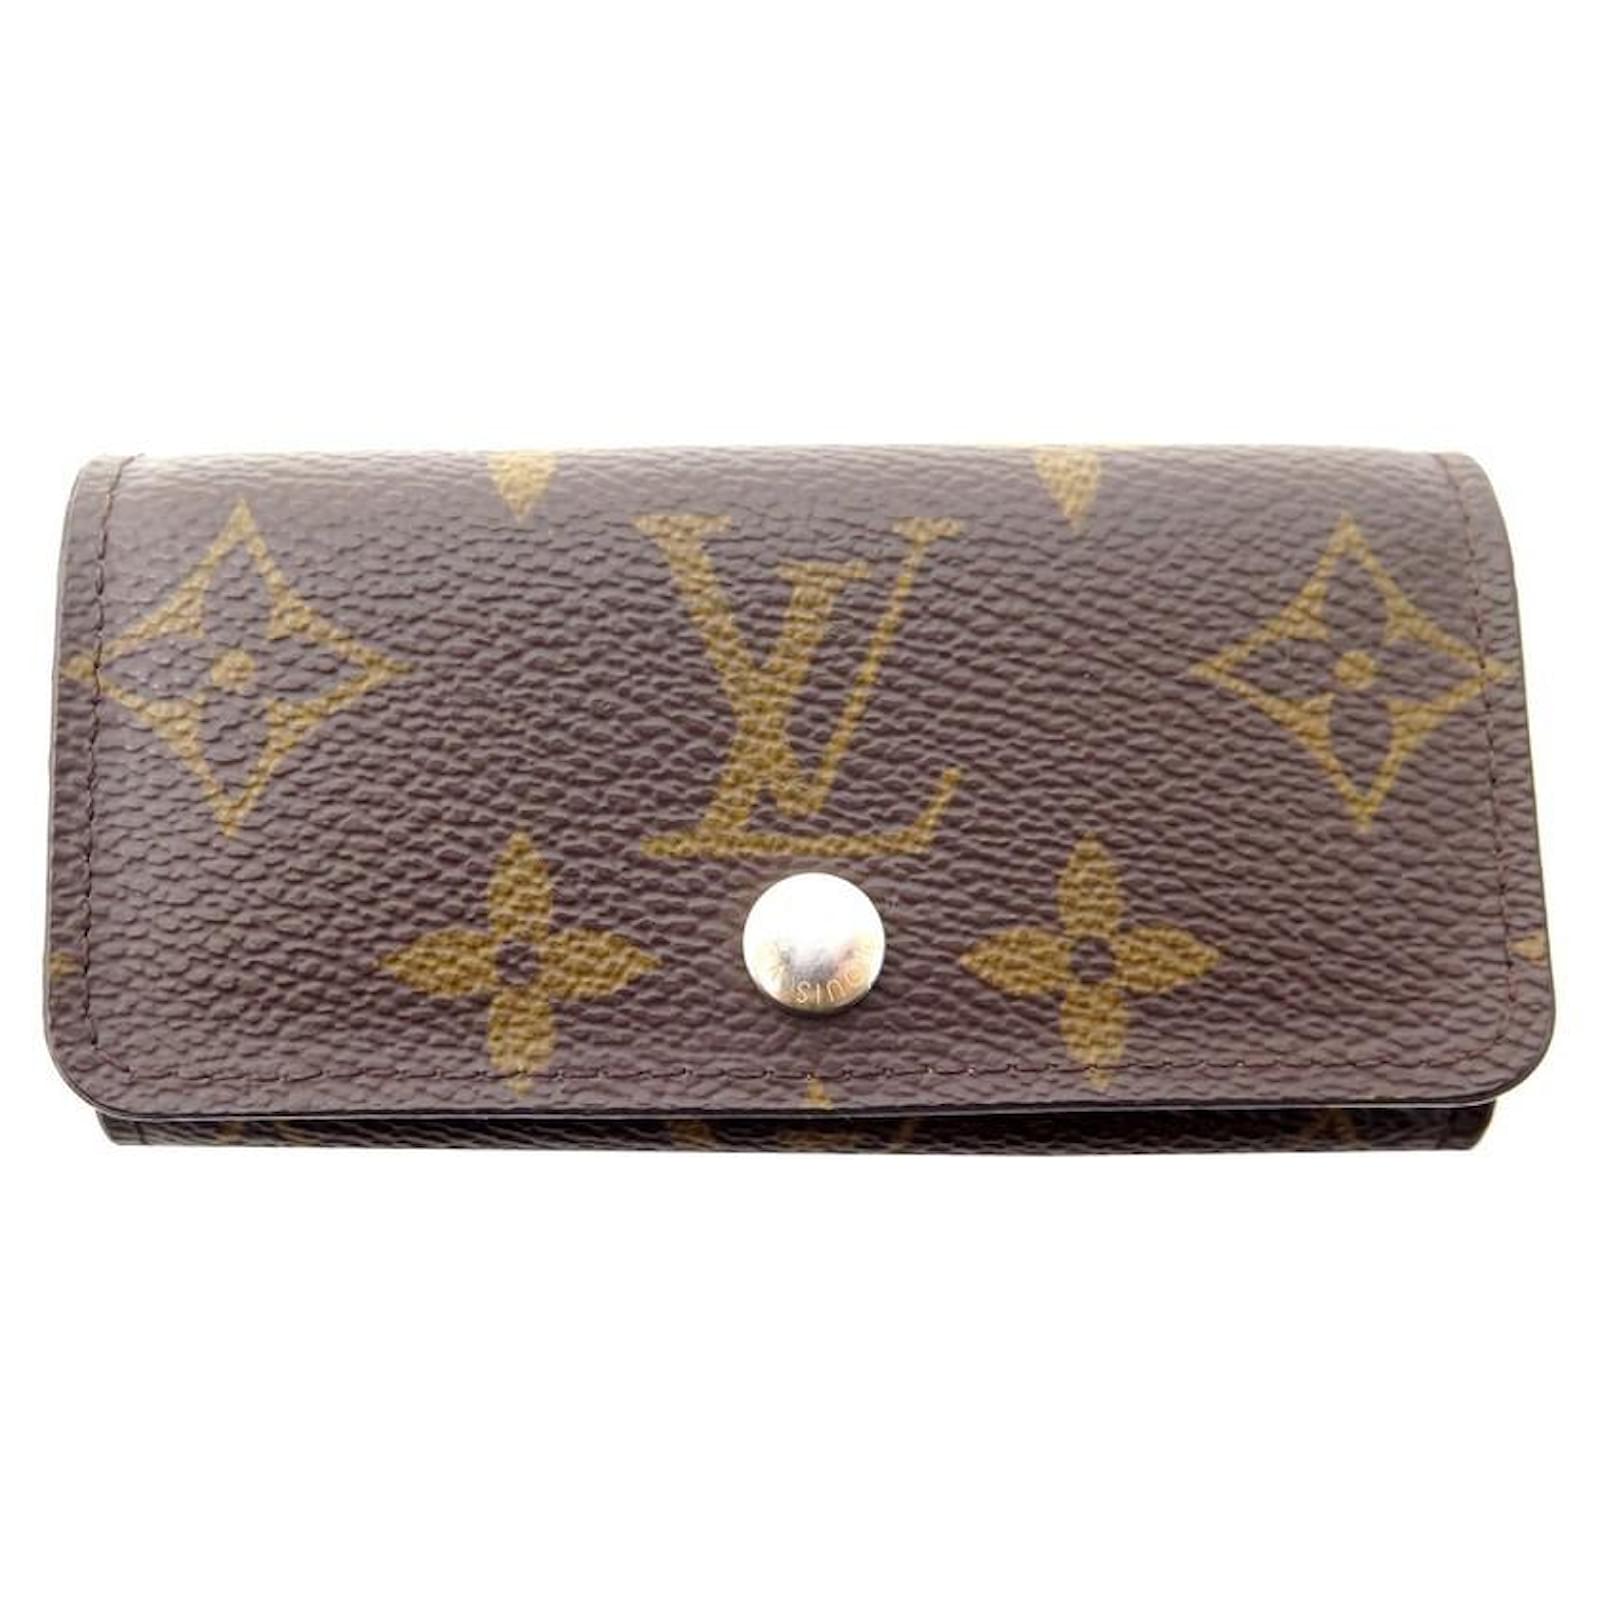 Louis Vuitton Monogram Multicles 4 Key Holder Case